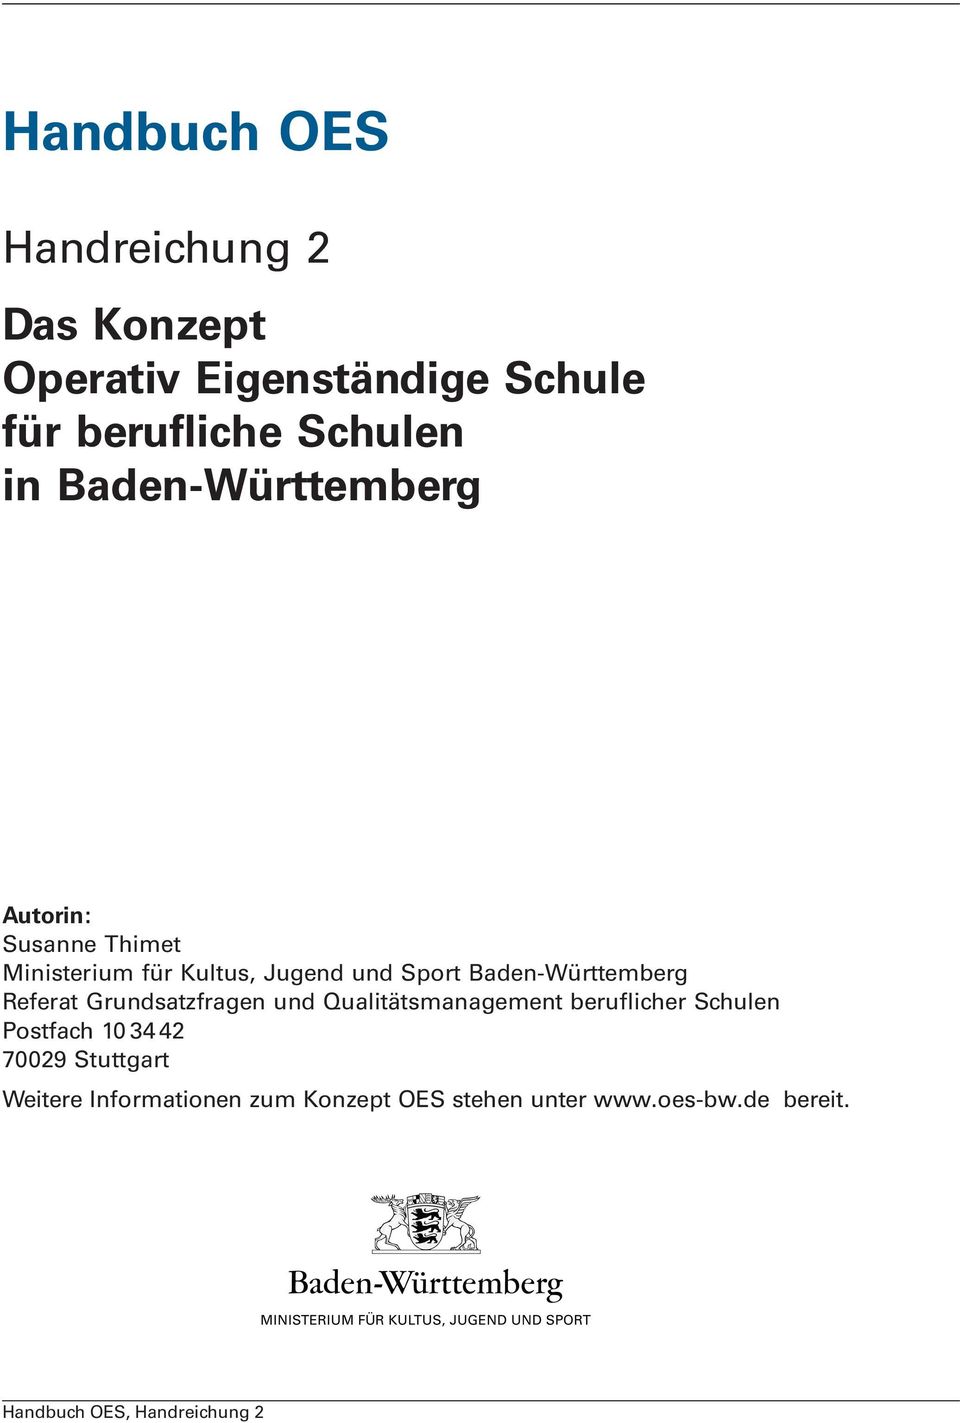 Baden-Württemberg Referat Grundsatzfragen und Quaitätsmanagement beruficher Schuen Postfach 10 34